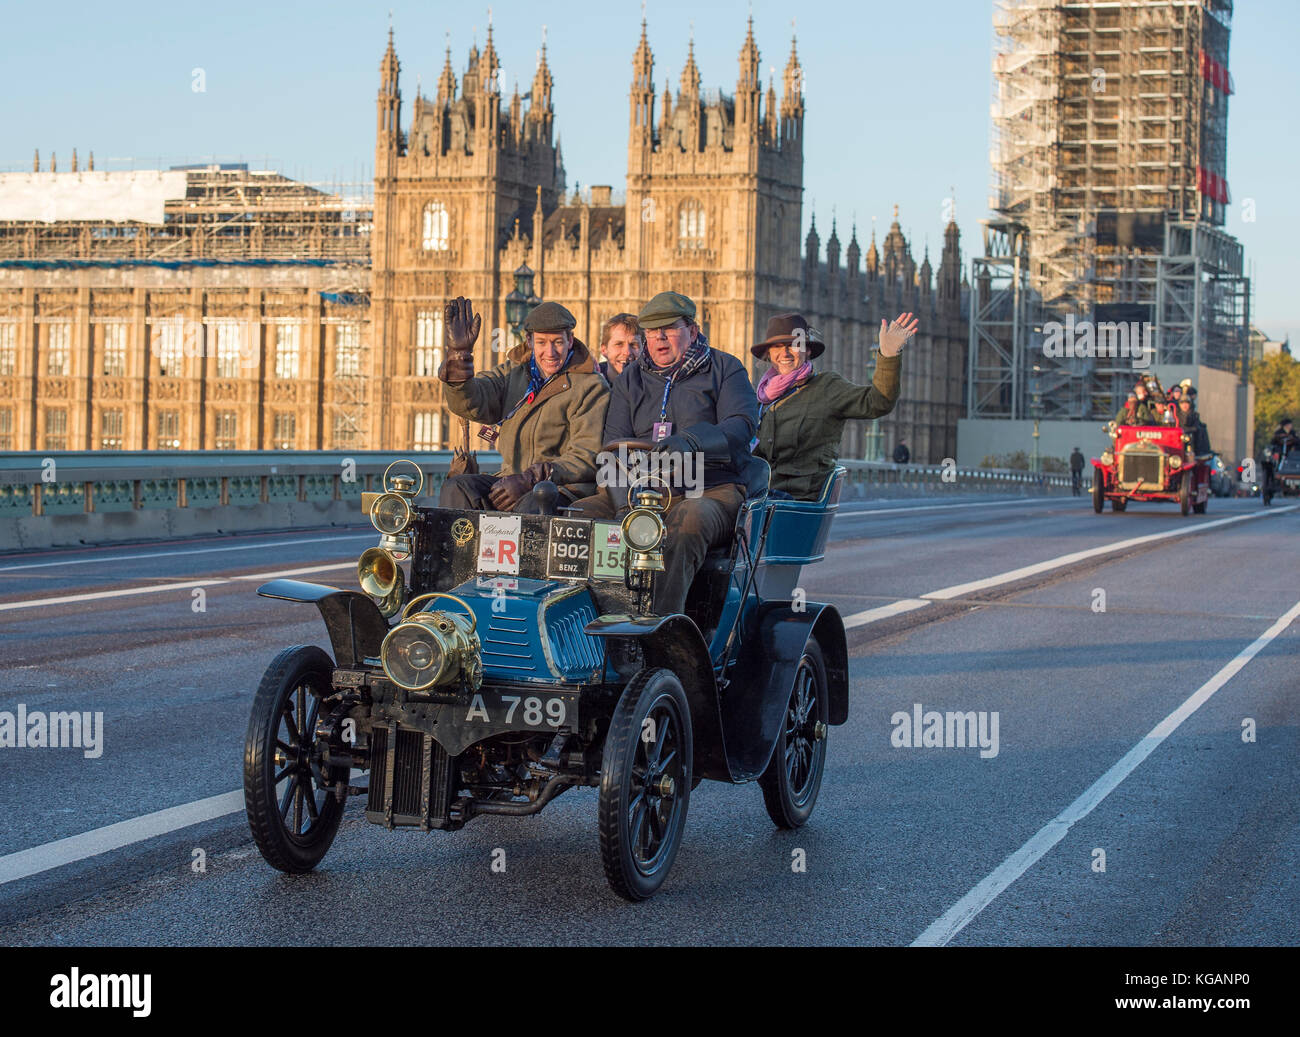 5 novembre 2017. Bonhams de Londres à Brighton, la course de voiture de vétéran, la plus longue course automobile au monde, 1902 Benz sur le pont de Westminster. Banque D'Images